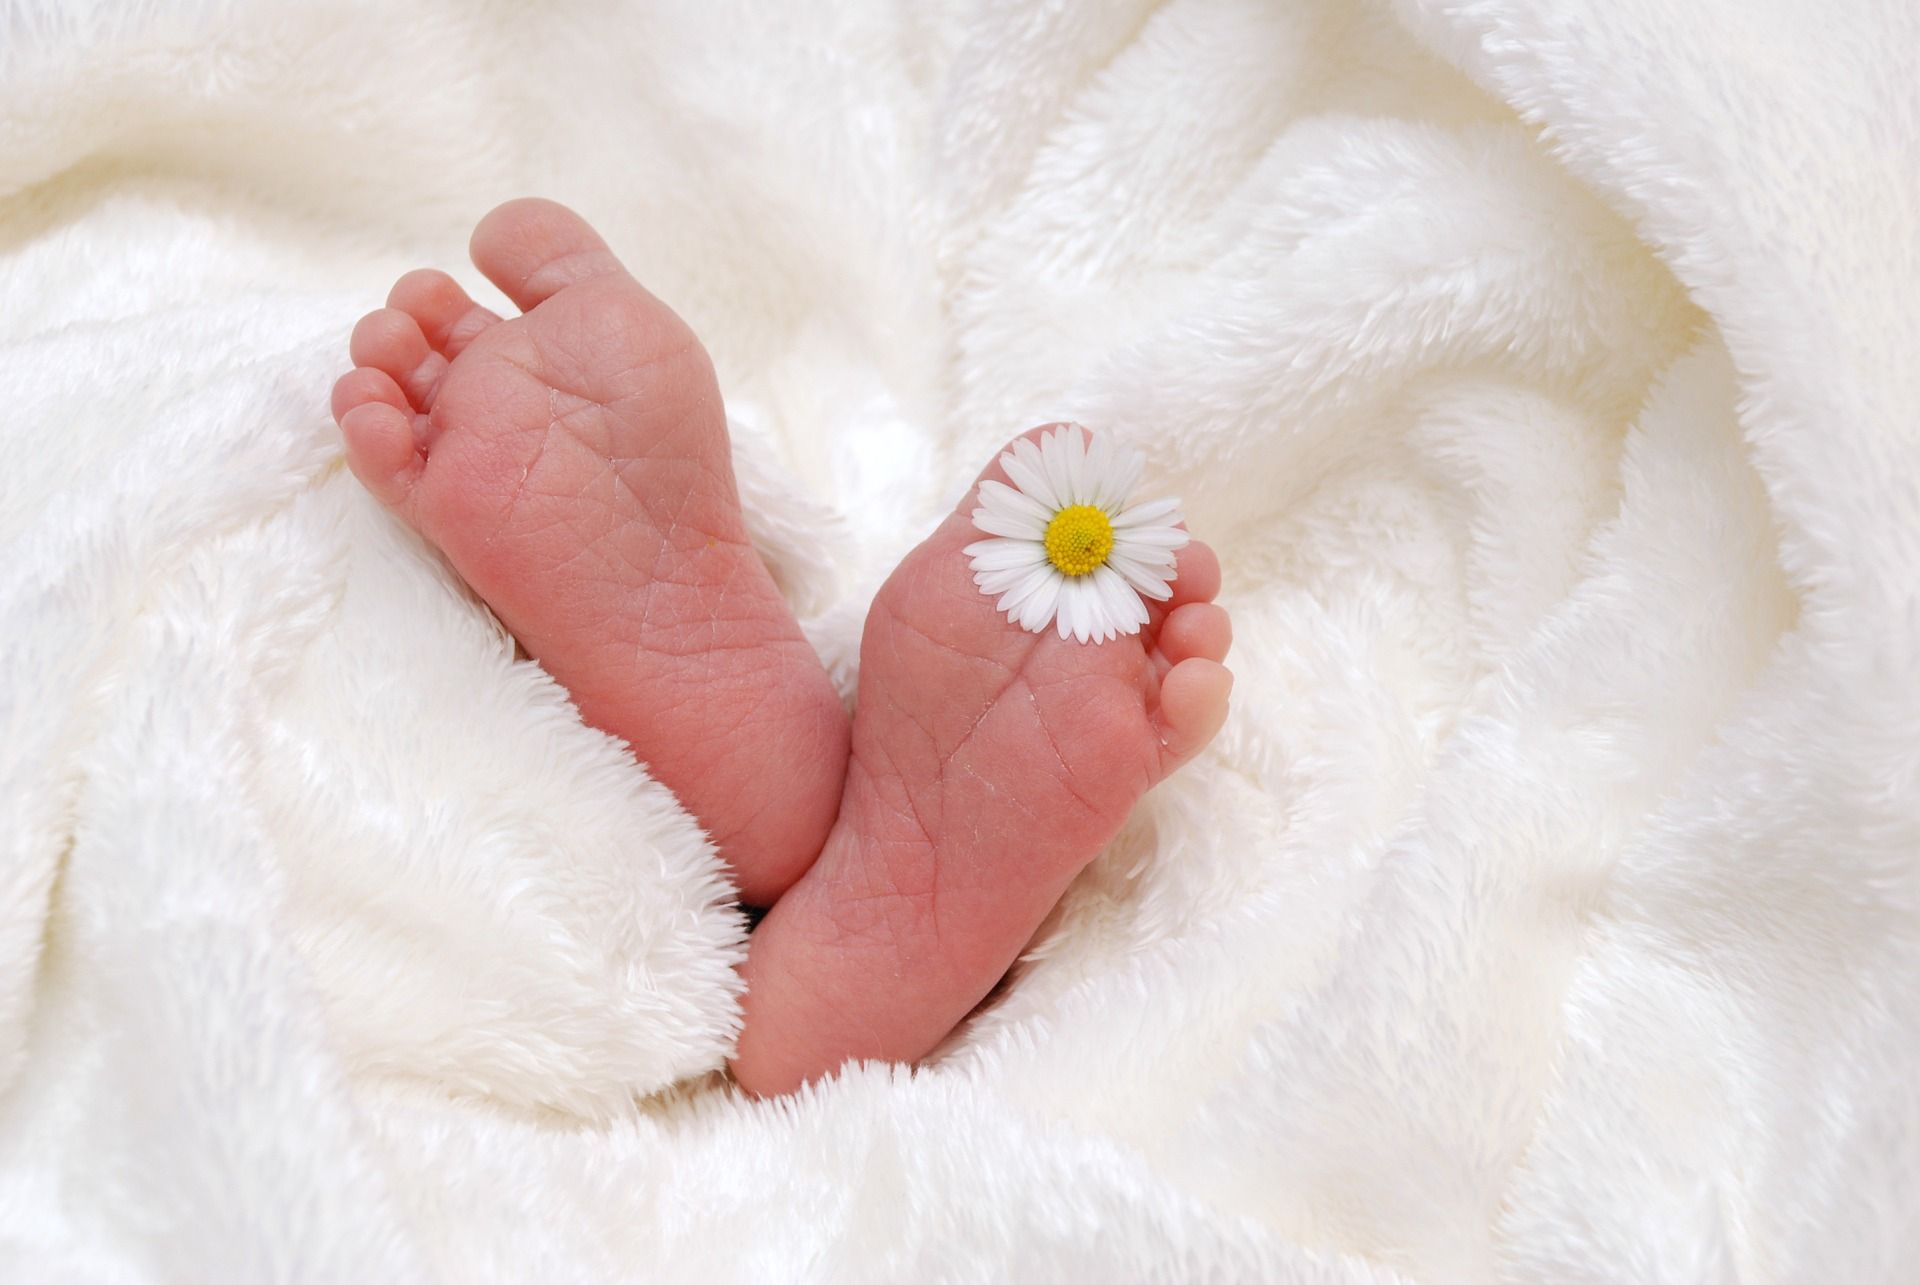 Baby-Füsschen mit einem Gänseblümchen zwischen den Zehen